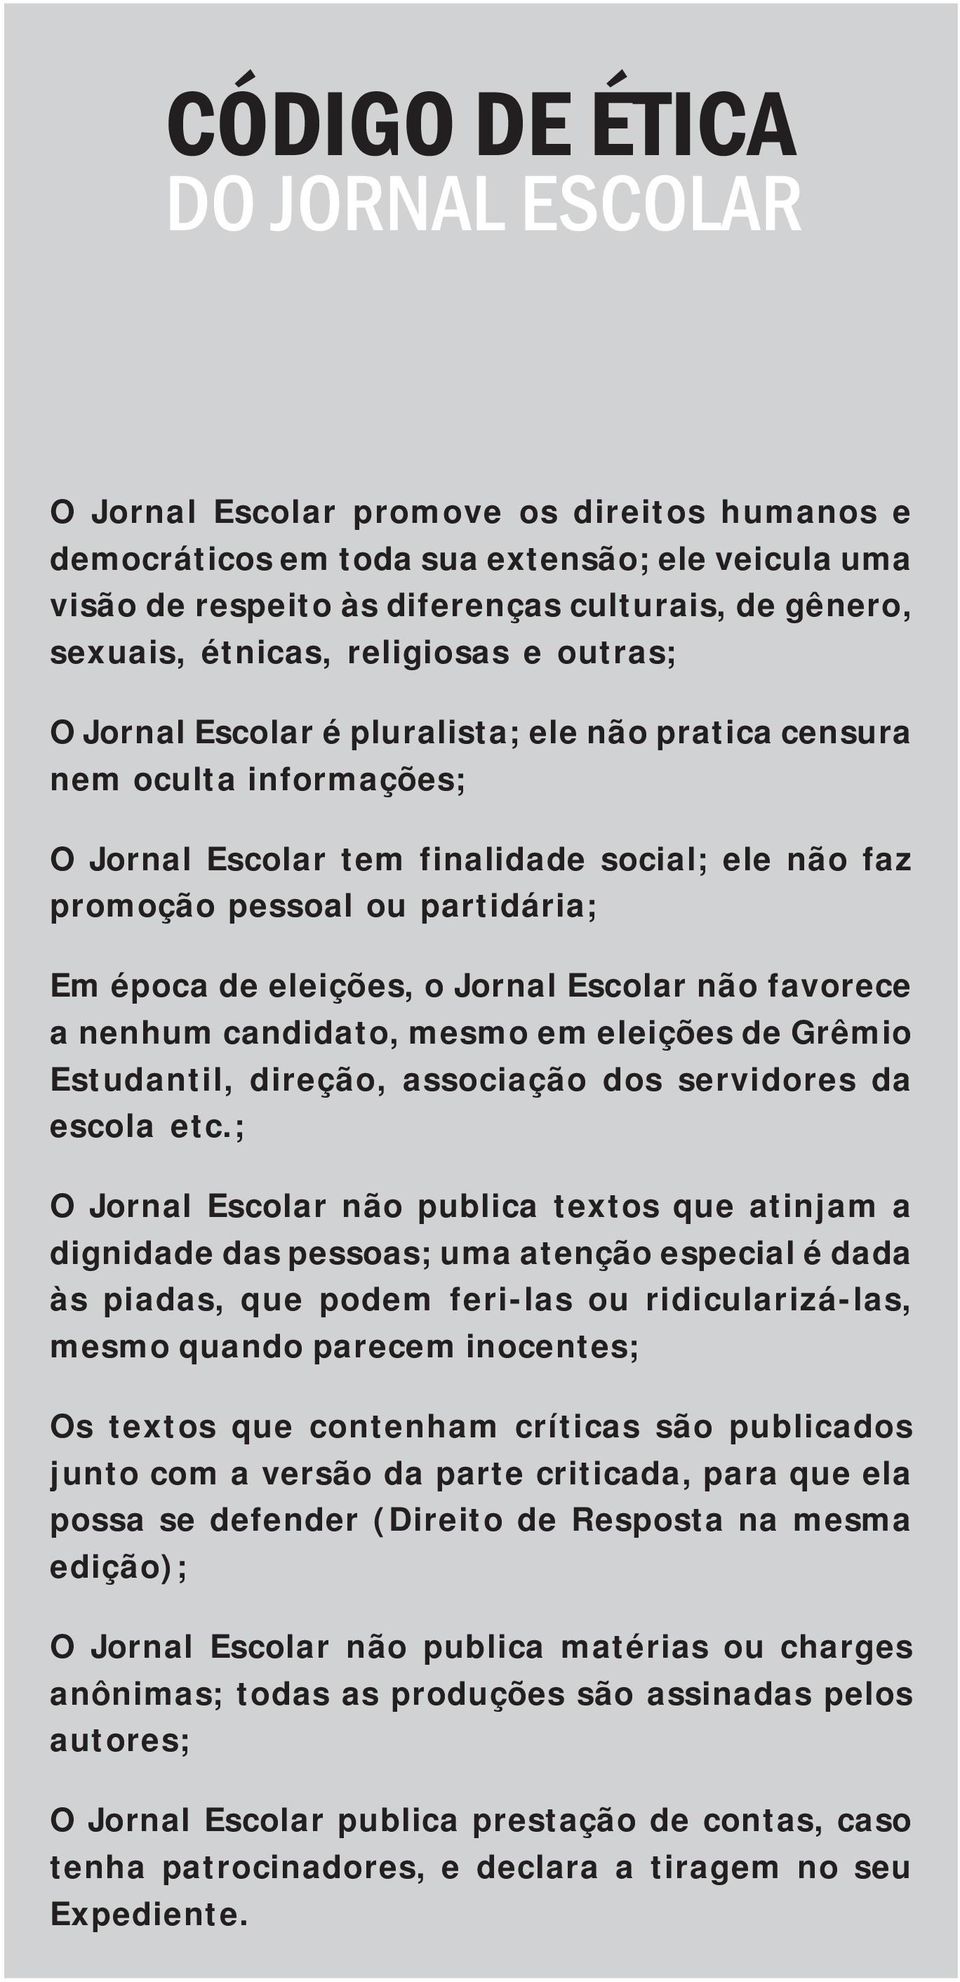 época de eleições, o Jornal Escolar não favorece a nenhum candidato, mesmo em eleições de Grêmio Estudantil, direção, associação dos servidores da escola etc.